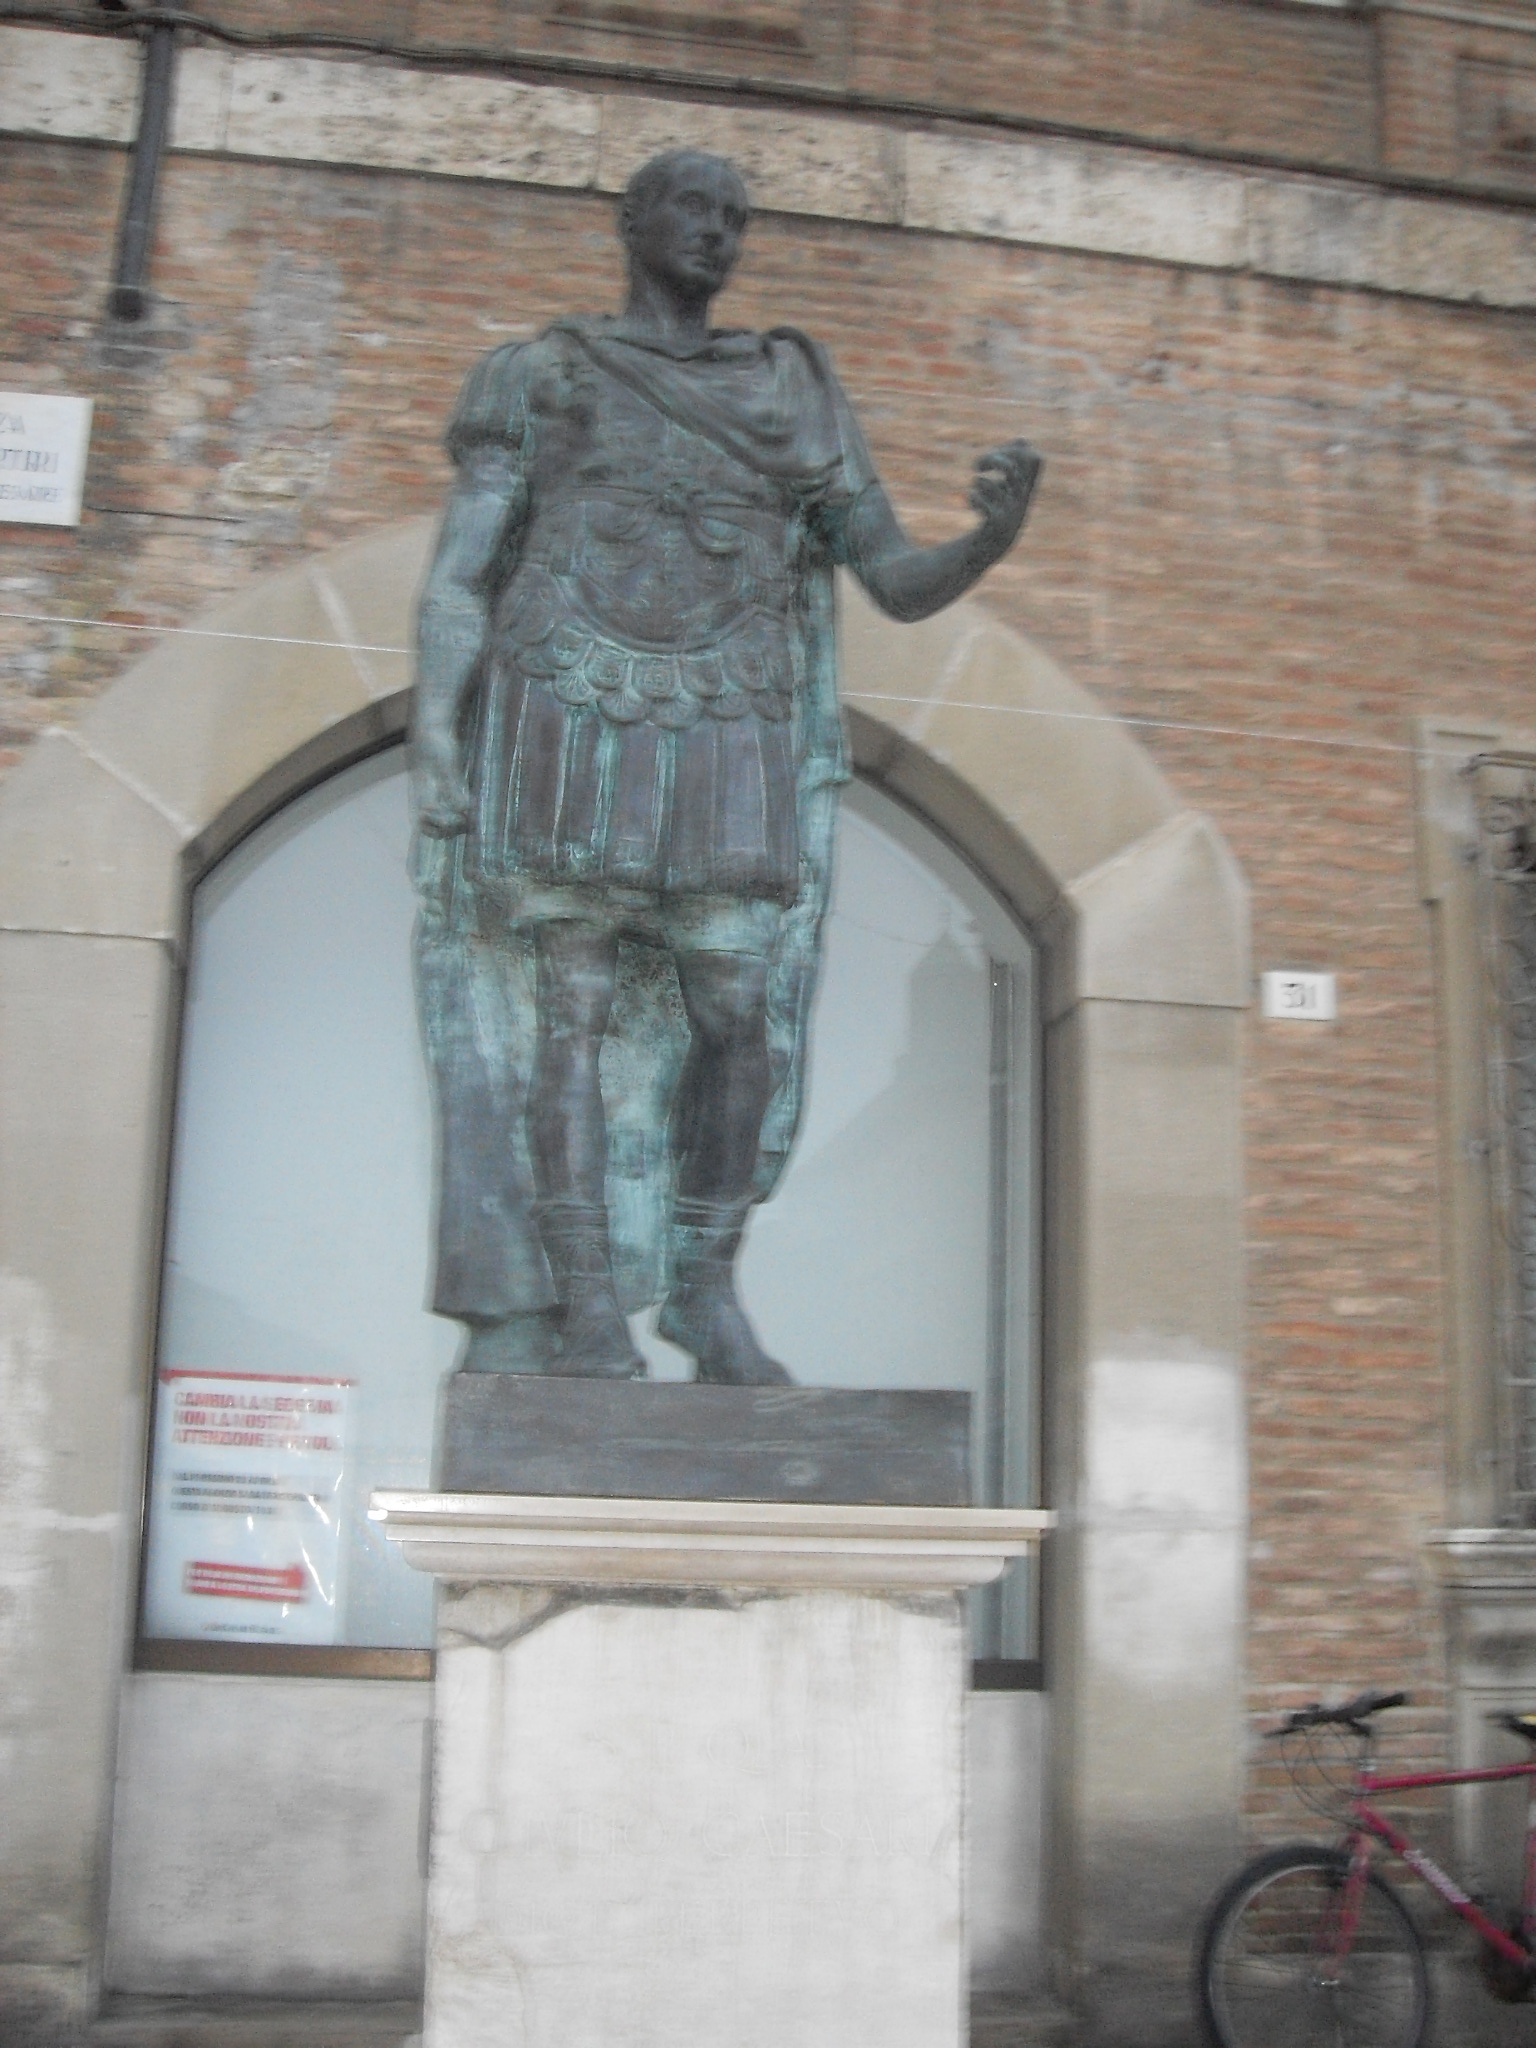 photo: https://upload.wikimedia.org/wikipedia/commons/f/fc/Statua_di_Giulio_Cesare%2C_Rimini.JPG